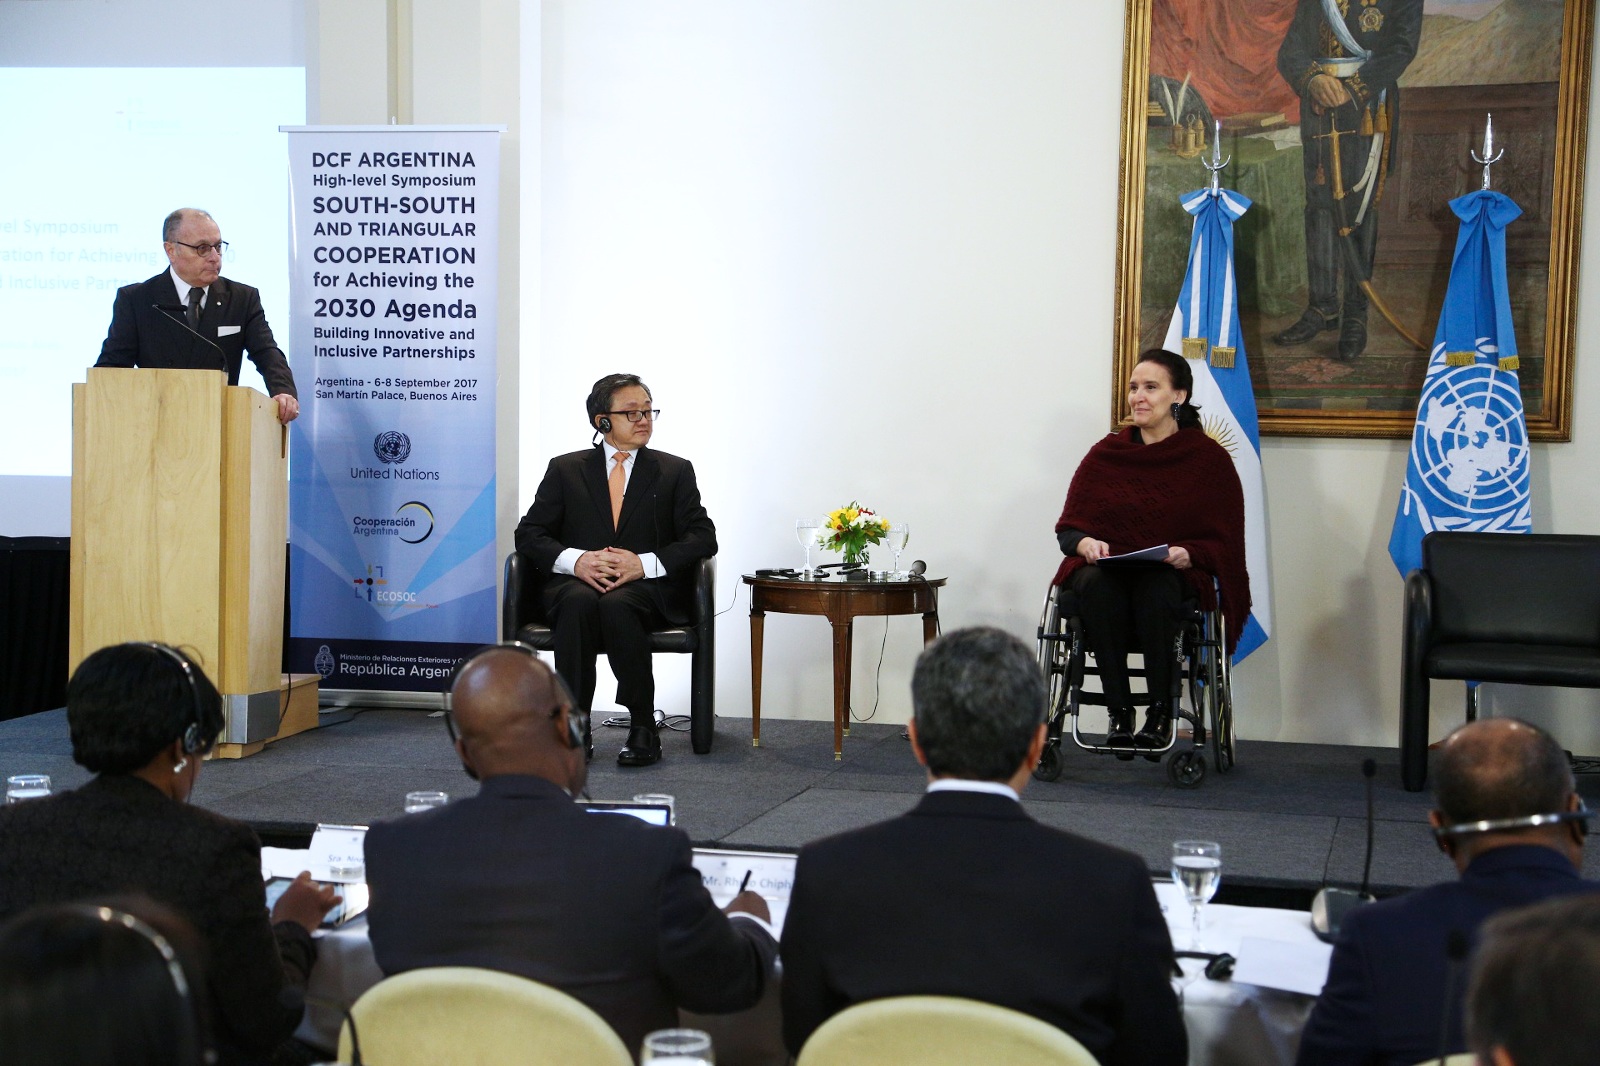 La Agenda 2030 es para la Argentina el horizonte hacia el cual orientamos nuestra cooperación internacional”